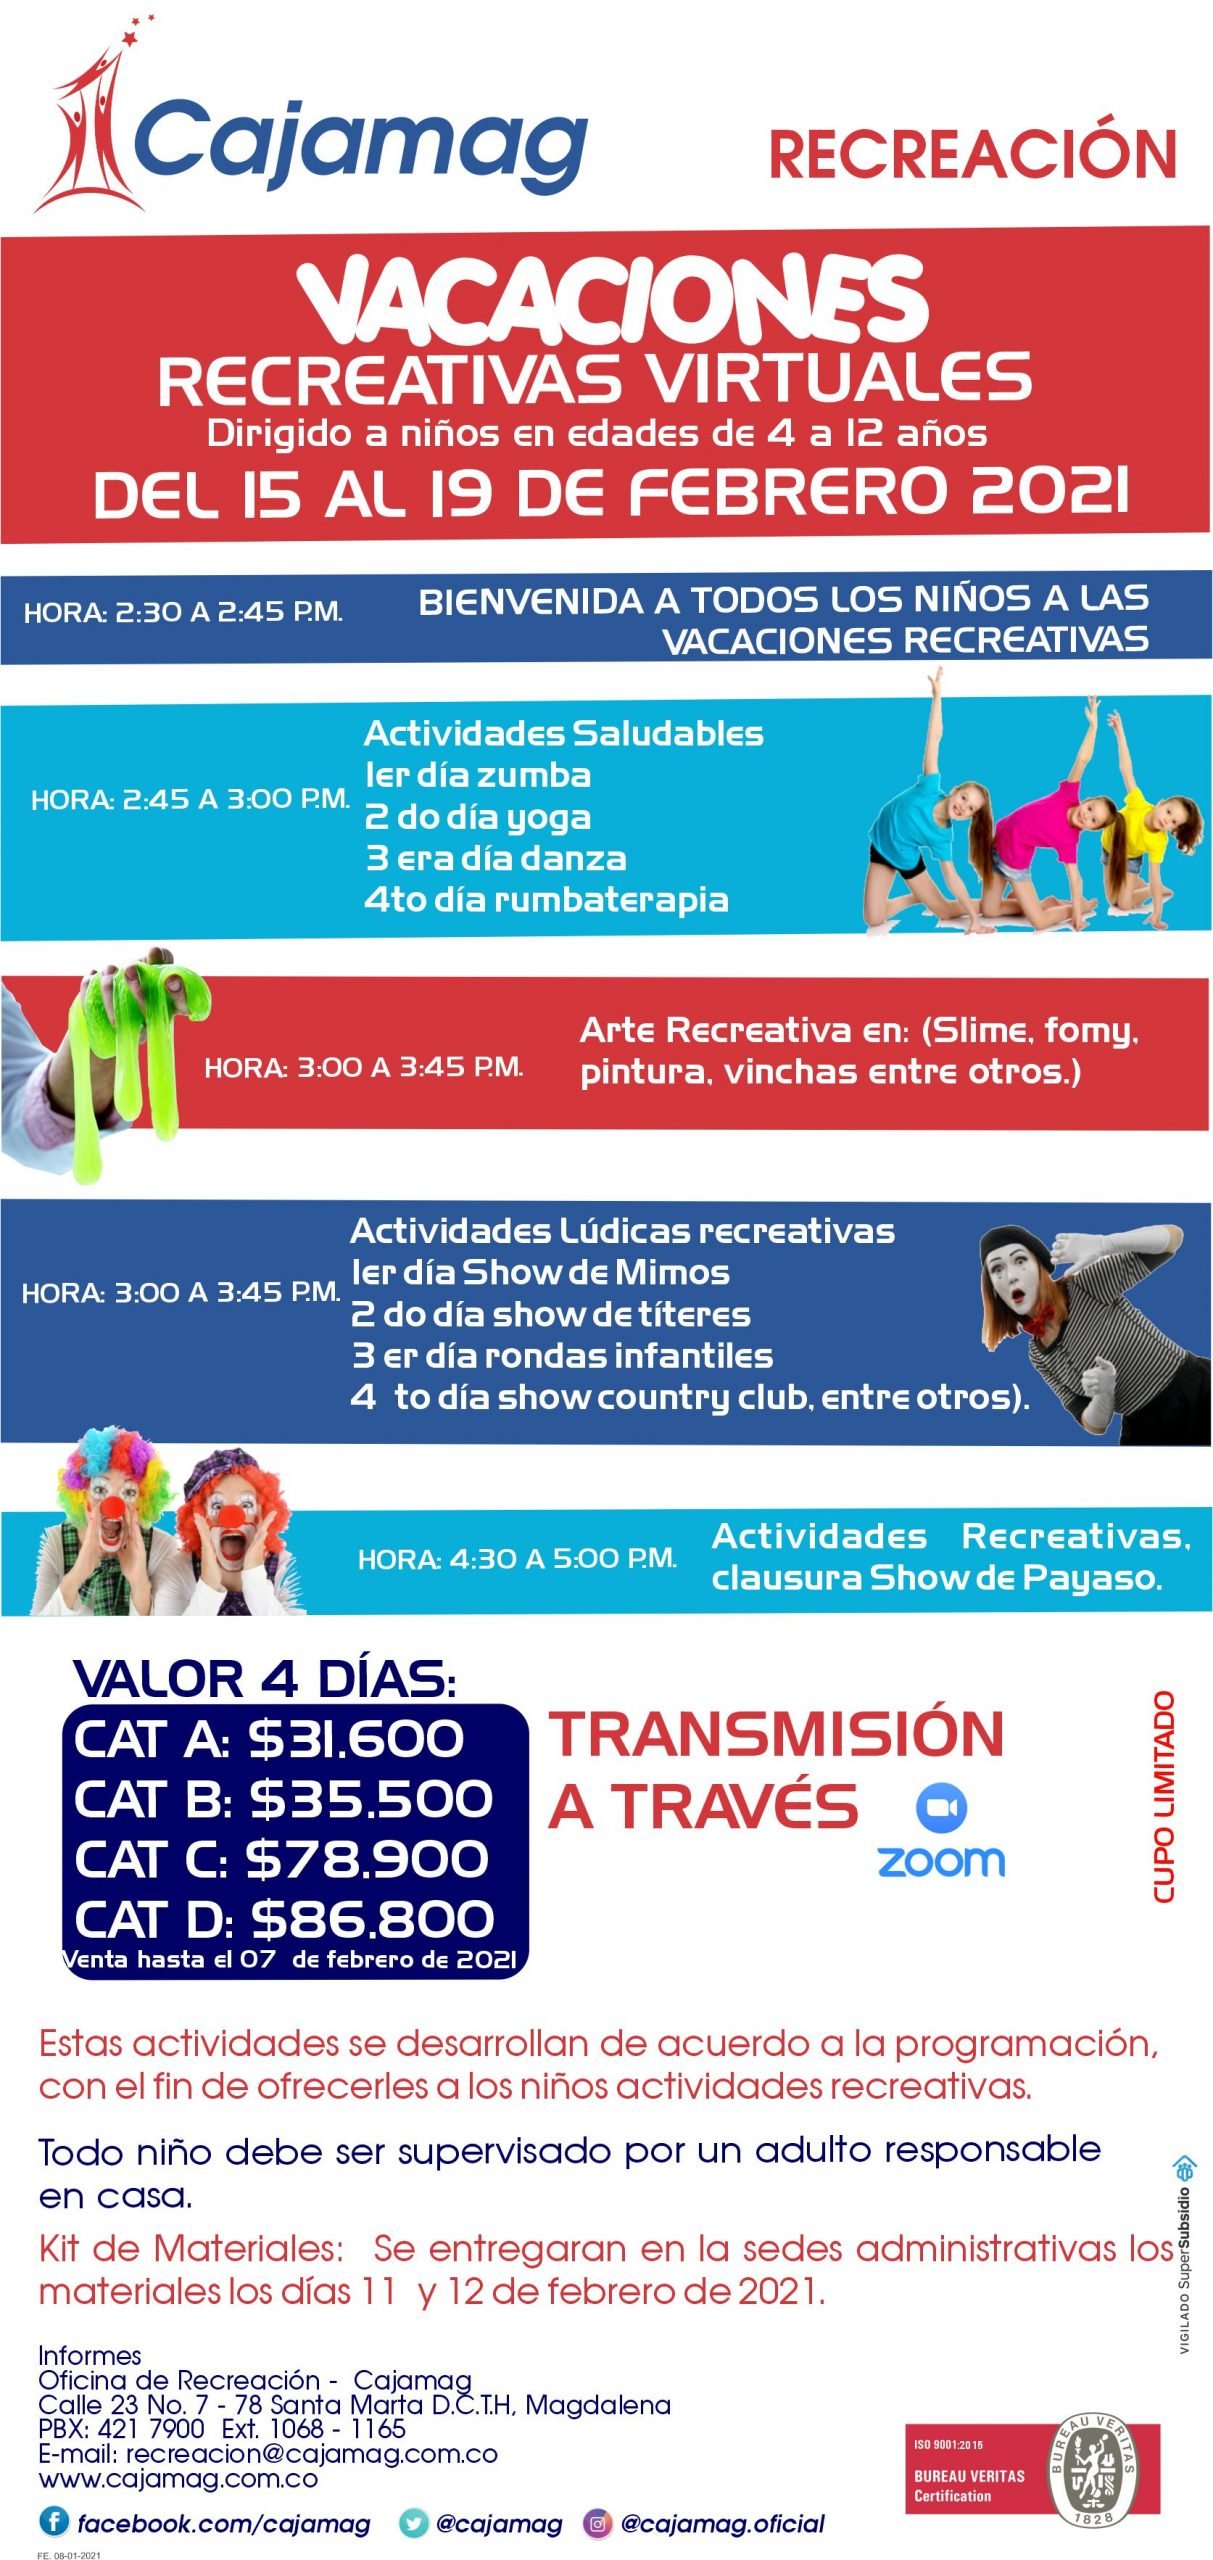 Recreación Cajamag - Vacaciones Recreativa Virtuales - Del 15 al 19 de  Febrero de 2021 - Cajamag